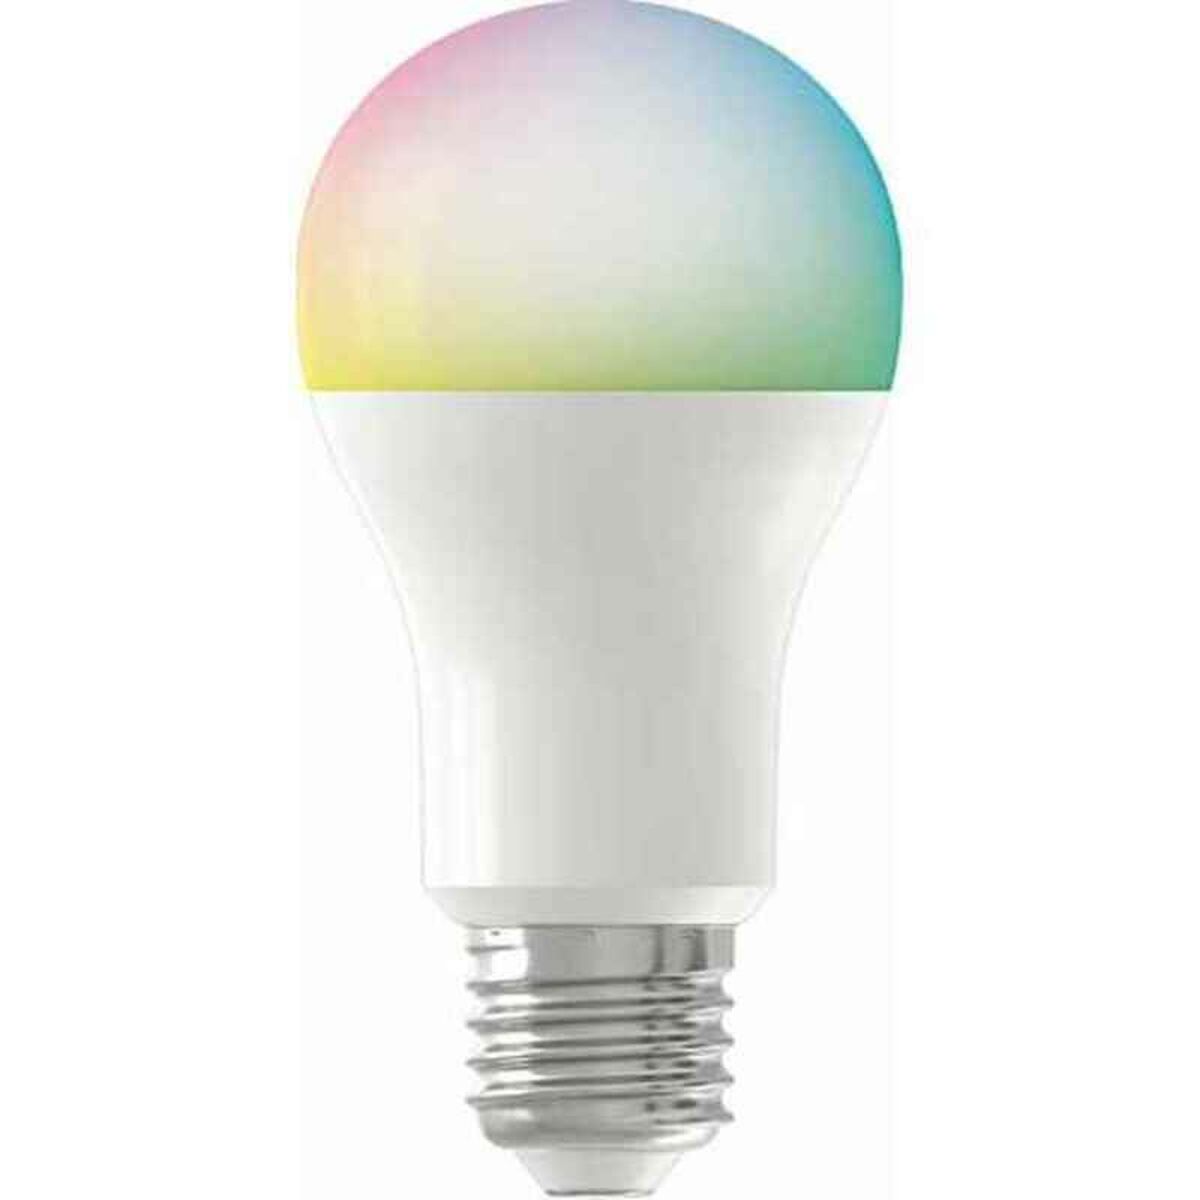 LED lamp Denver Electronics SHL-350 RGB White 9 W E27 806 lm (2700 K)